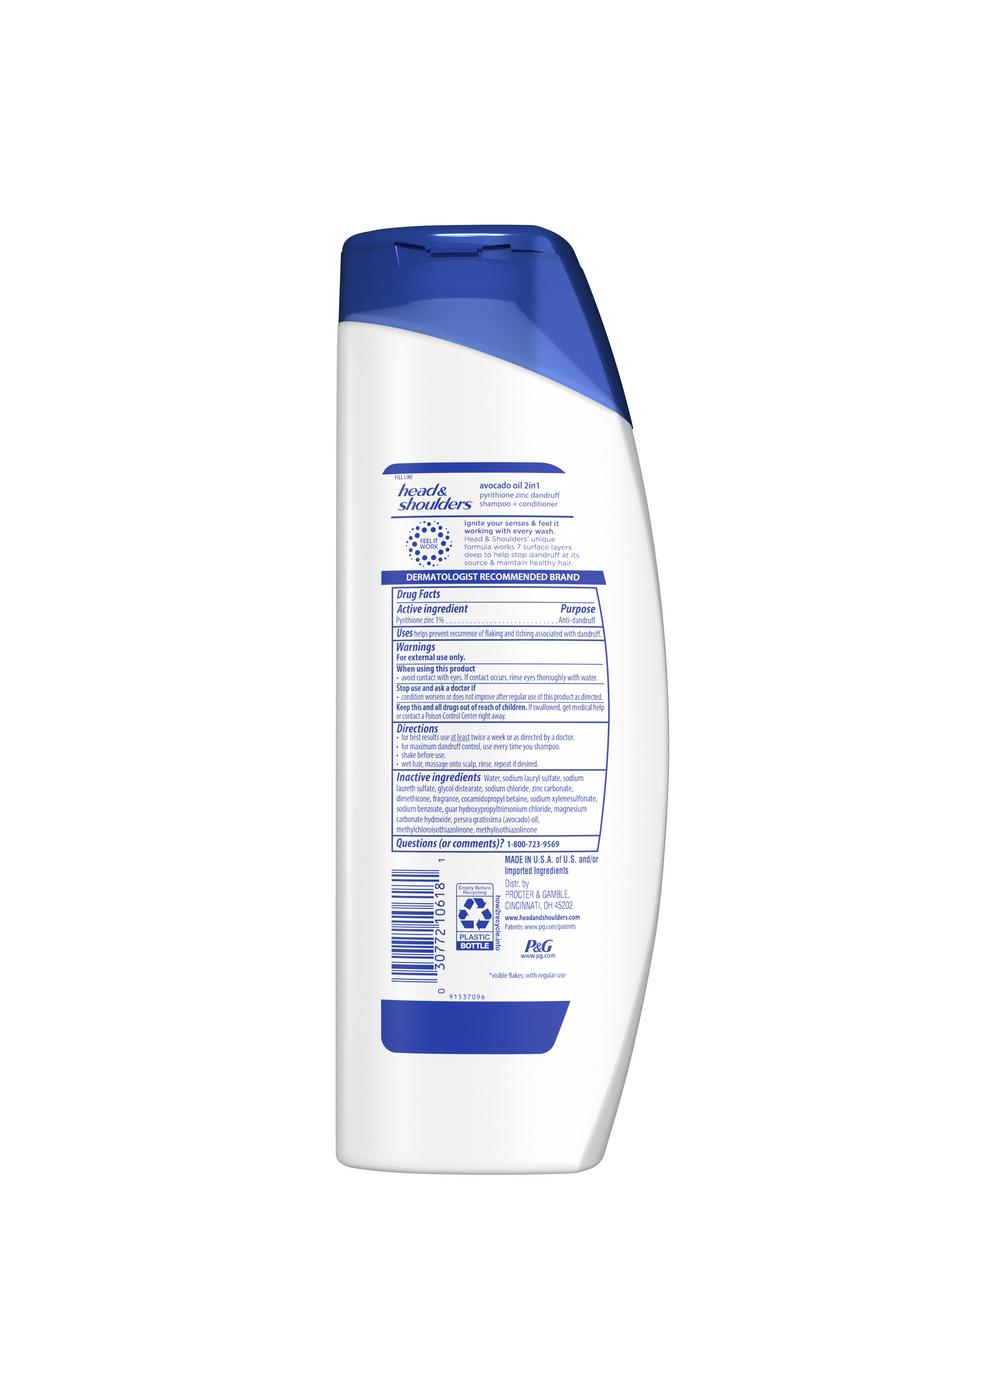 Head & Shoulders Avocado Oil 2 in 1 Shampoo + Conditioner; image 2 of 2